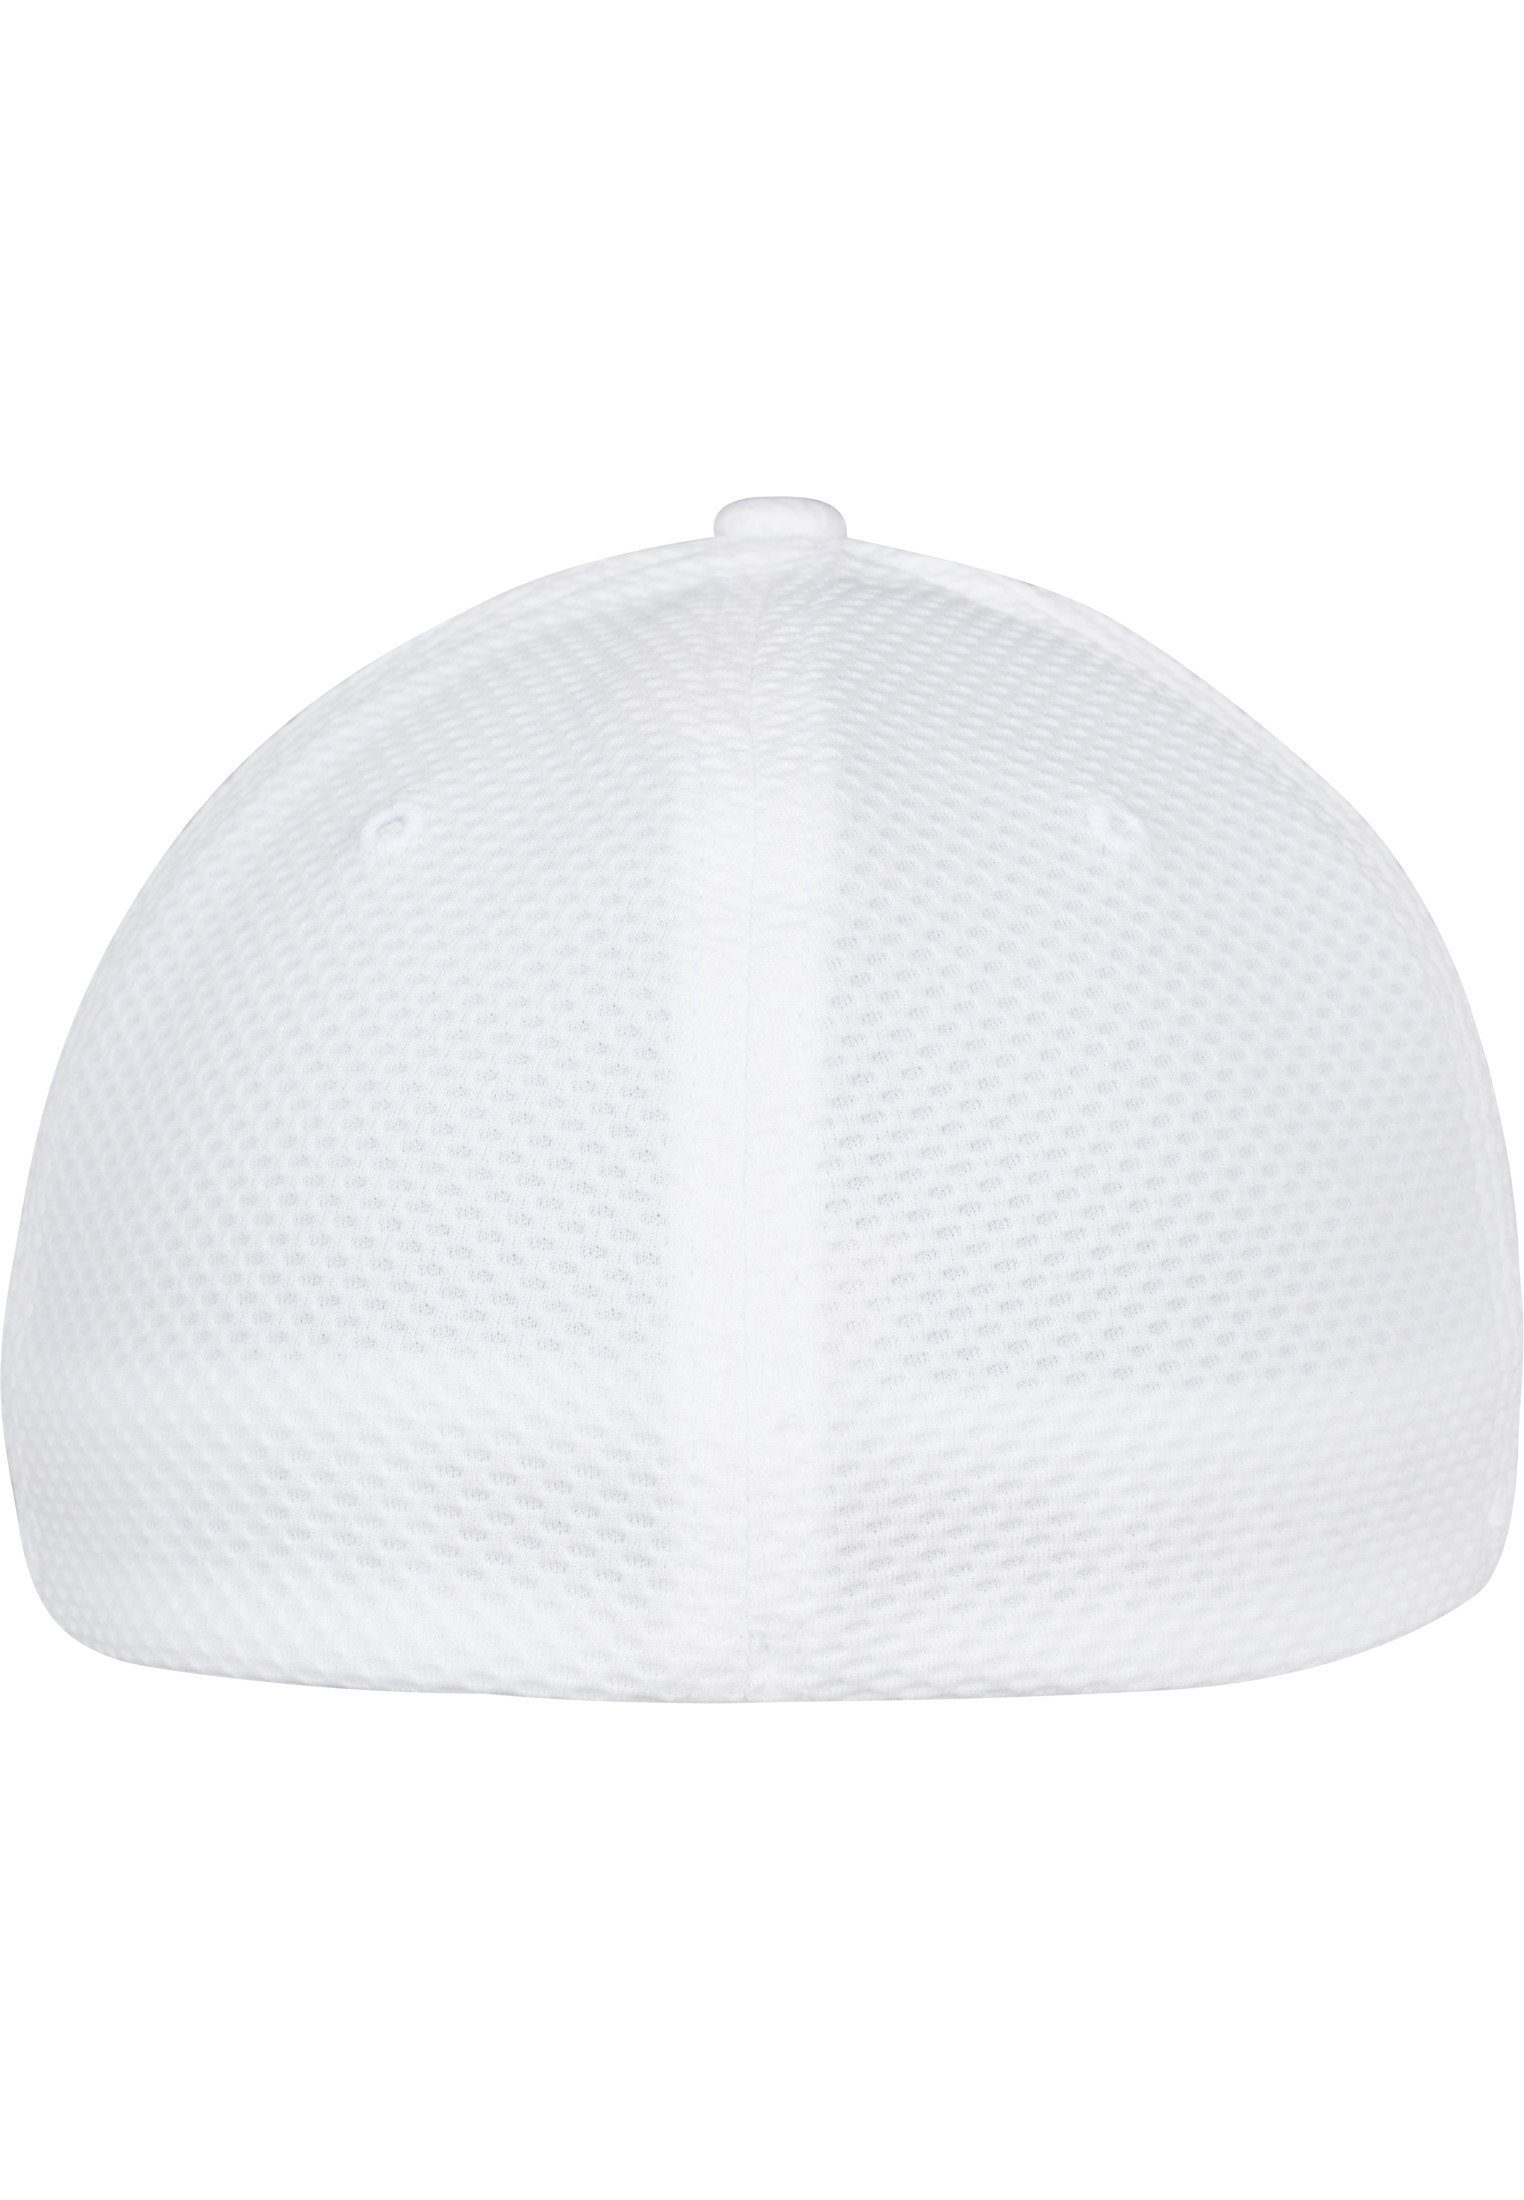 Jersey Cap Cap Flexfit white Hexagon 3D Accessoires Flex Flexfit